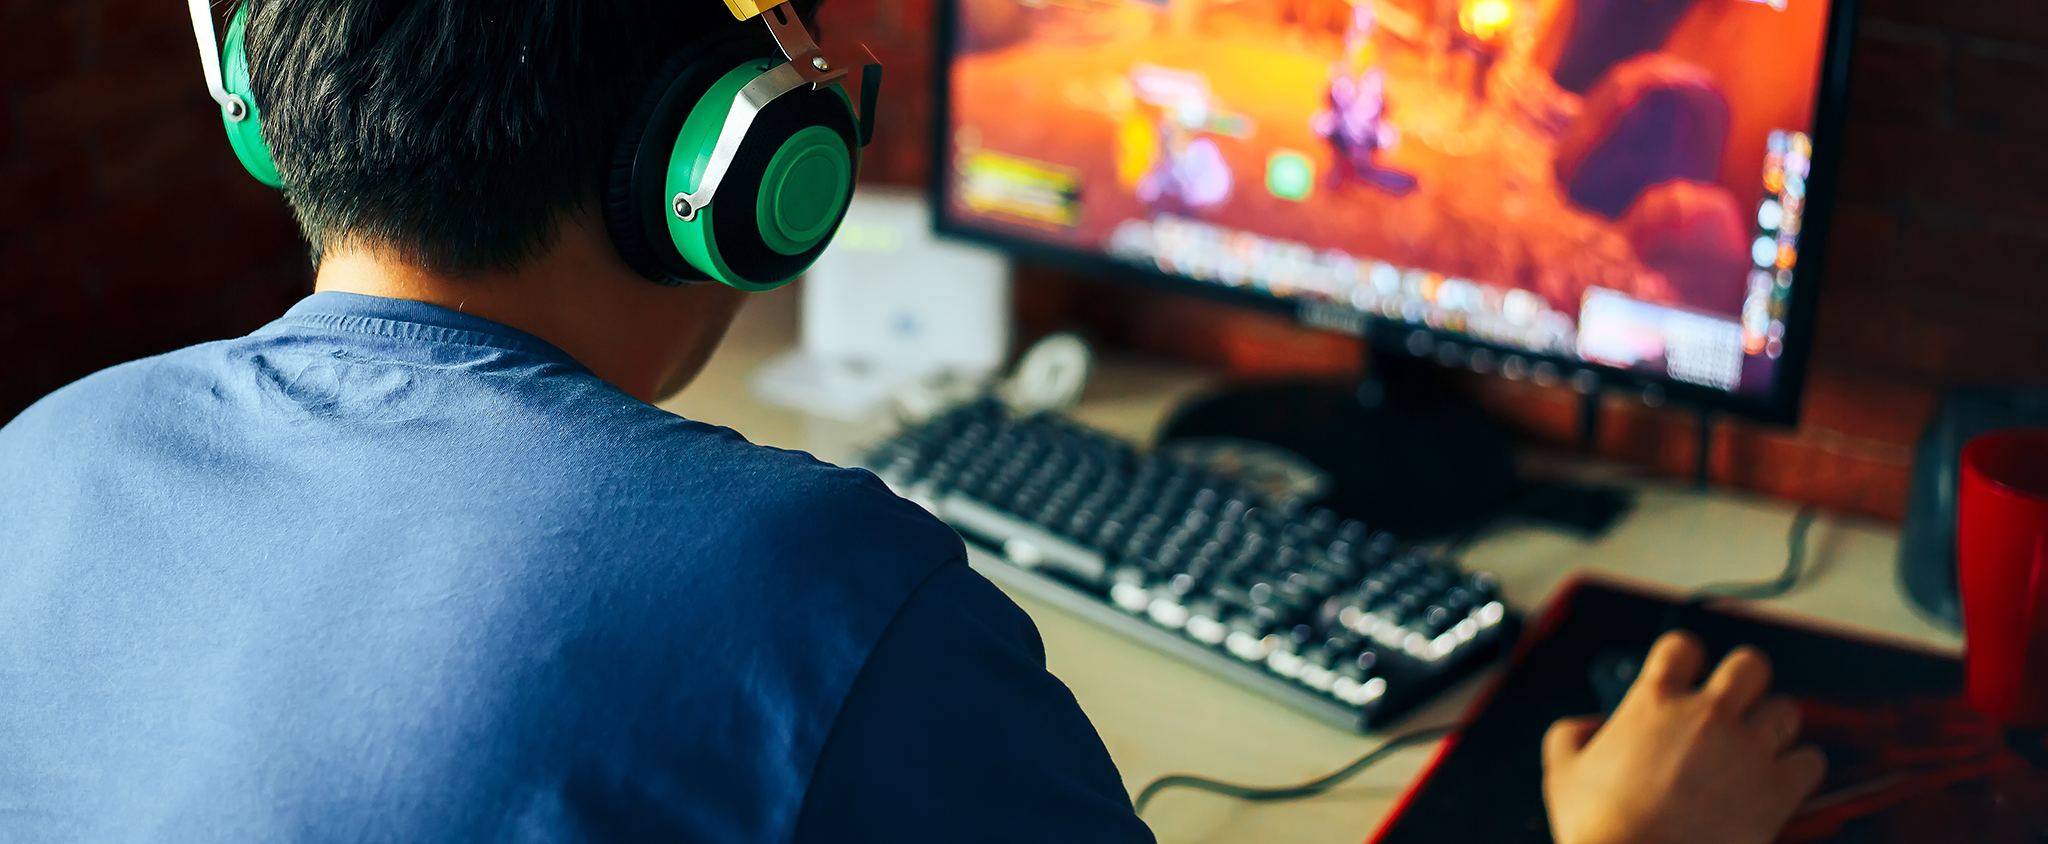 Gaming Hobby zum Beruf machen Mann mit Headset am Videospiele spielen zocken Game Setup Equipment